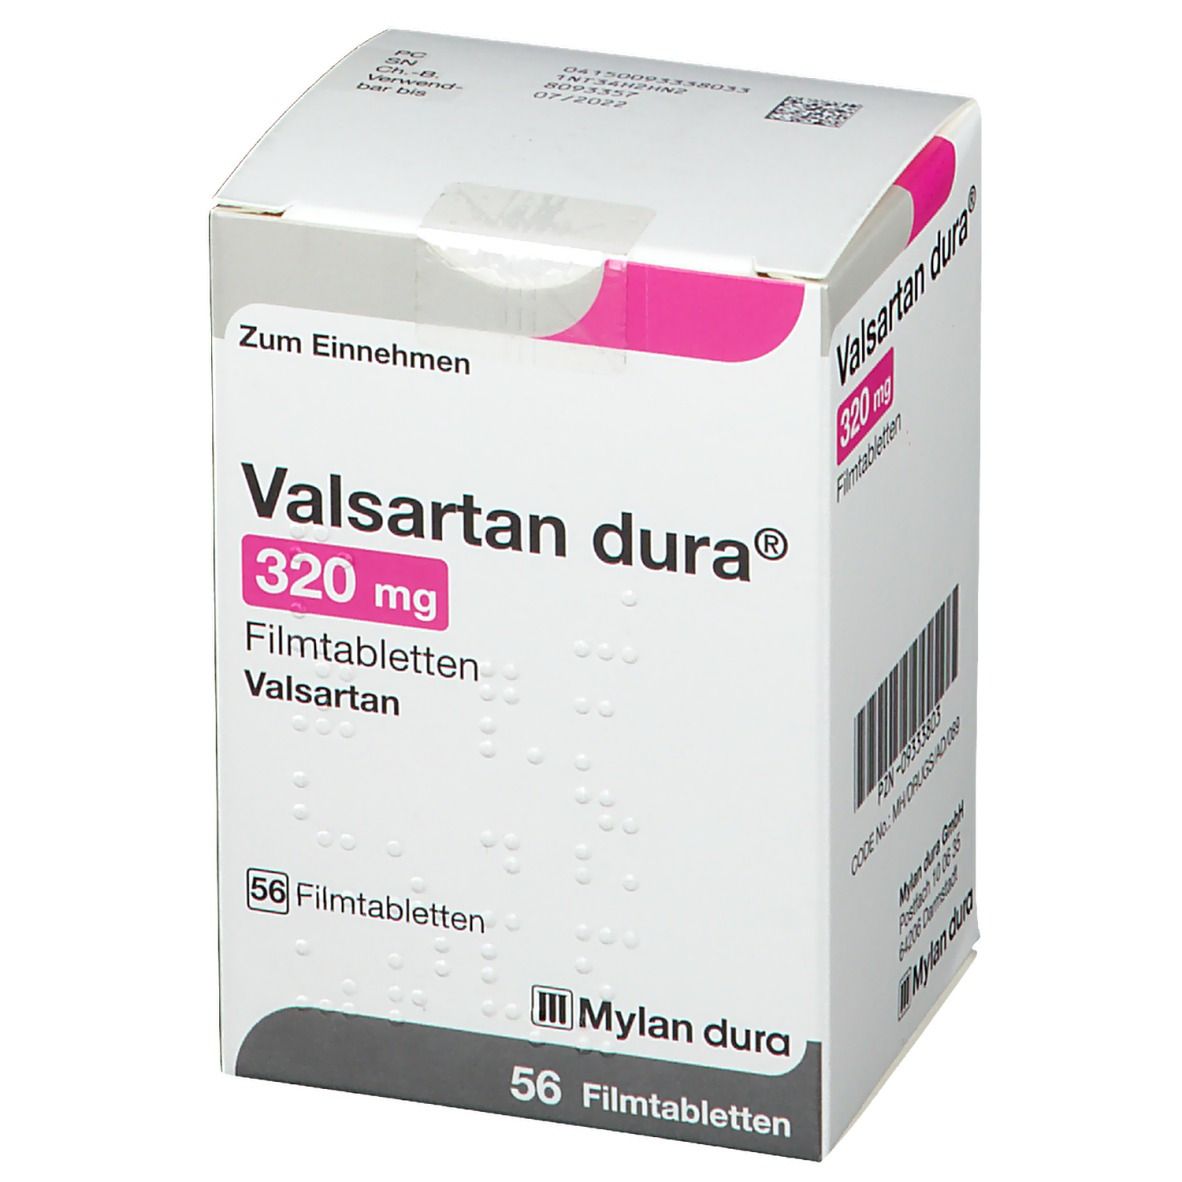 Valsartan dura® 320 mg